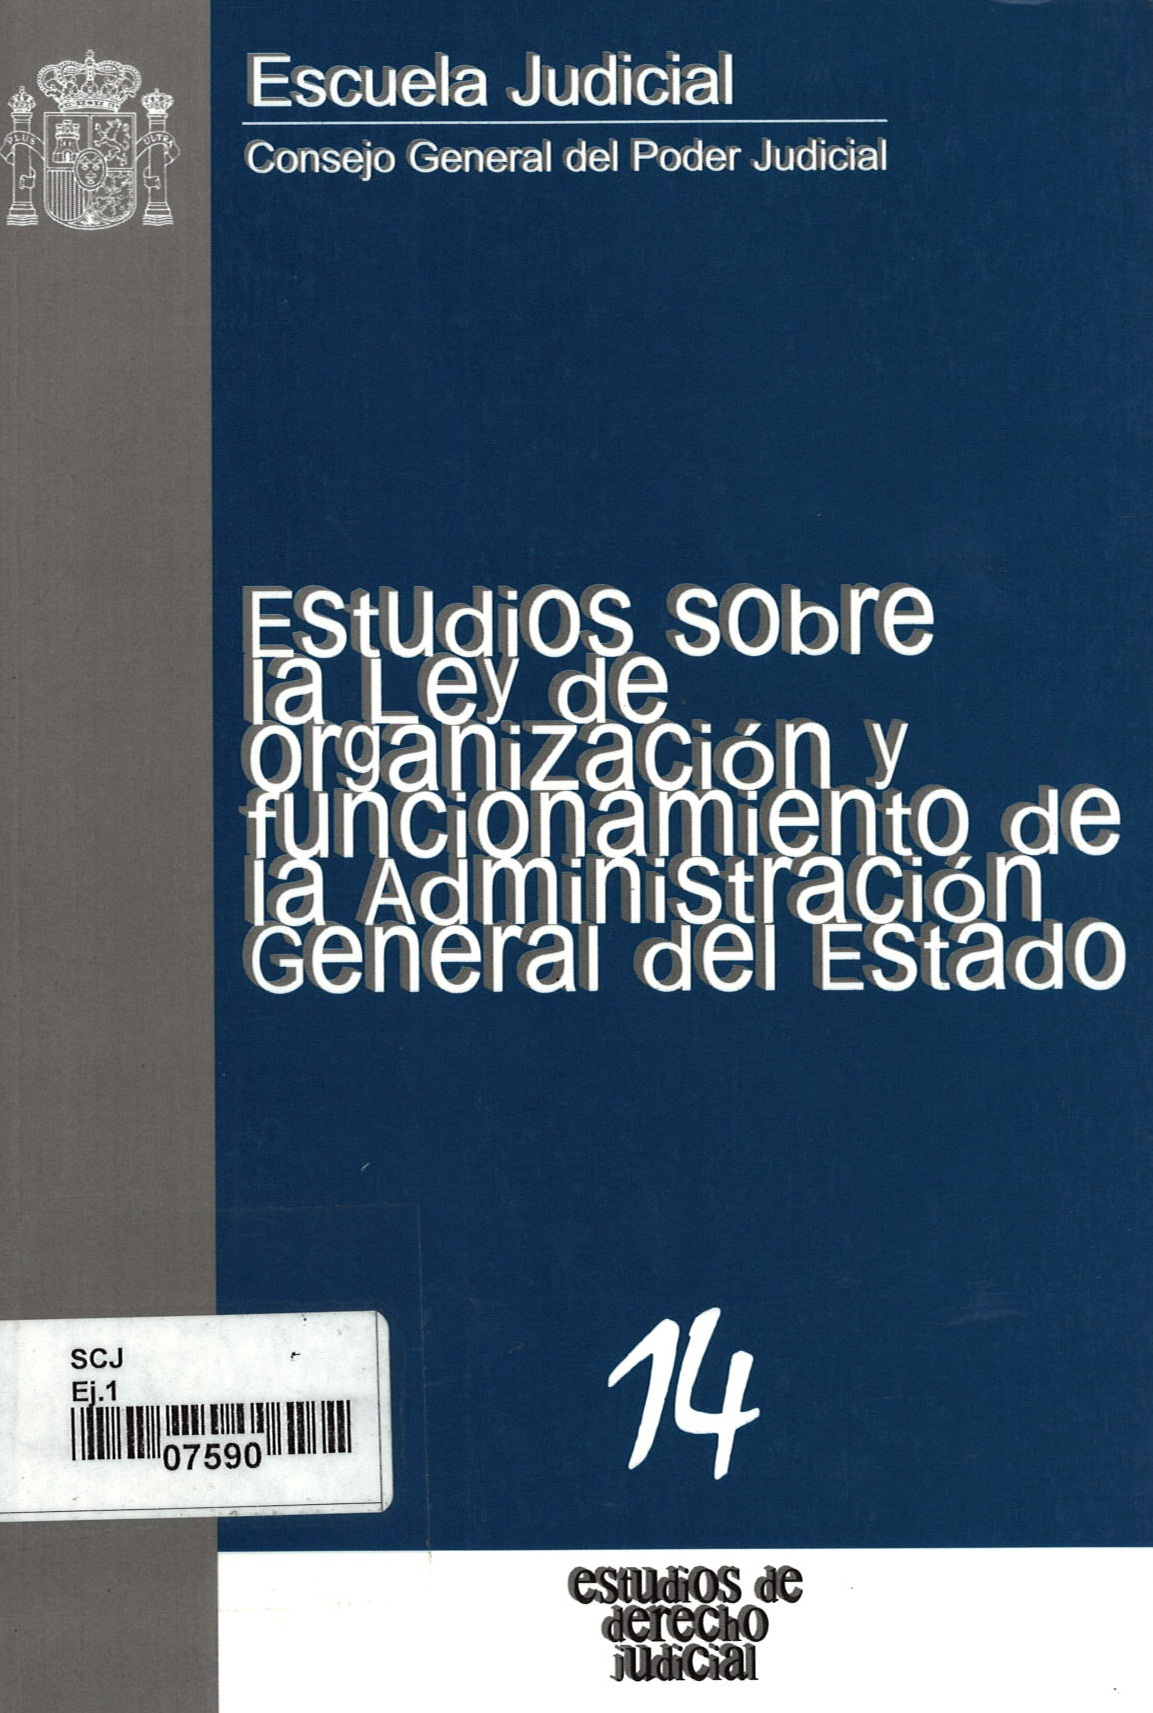 Estudio sobre la Ley de organización y funcionamiento de la administración general del Estado